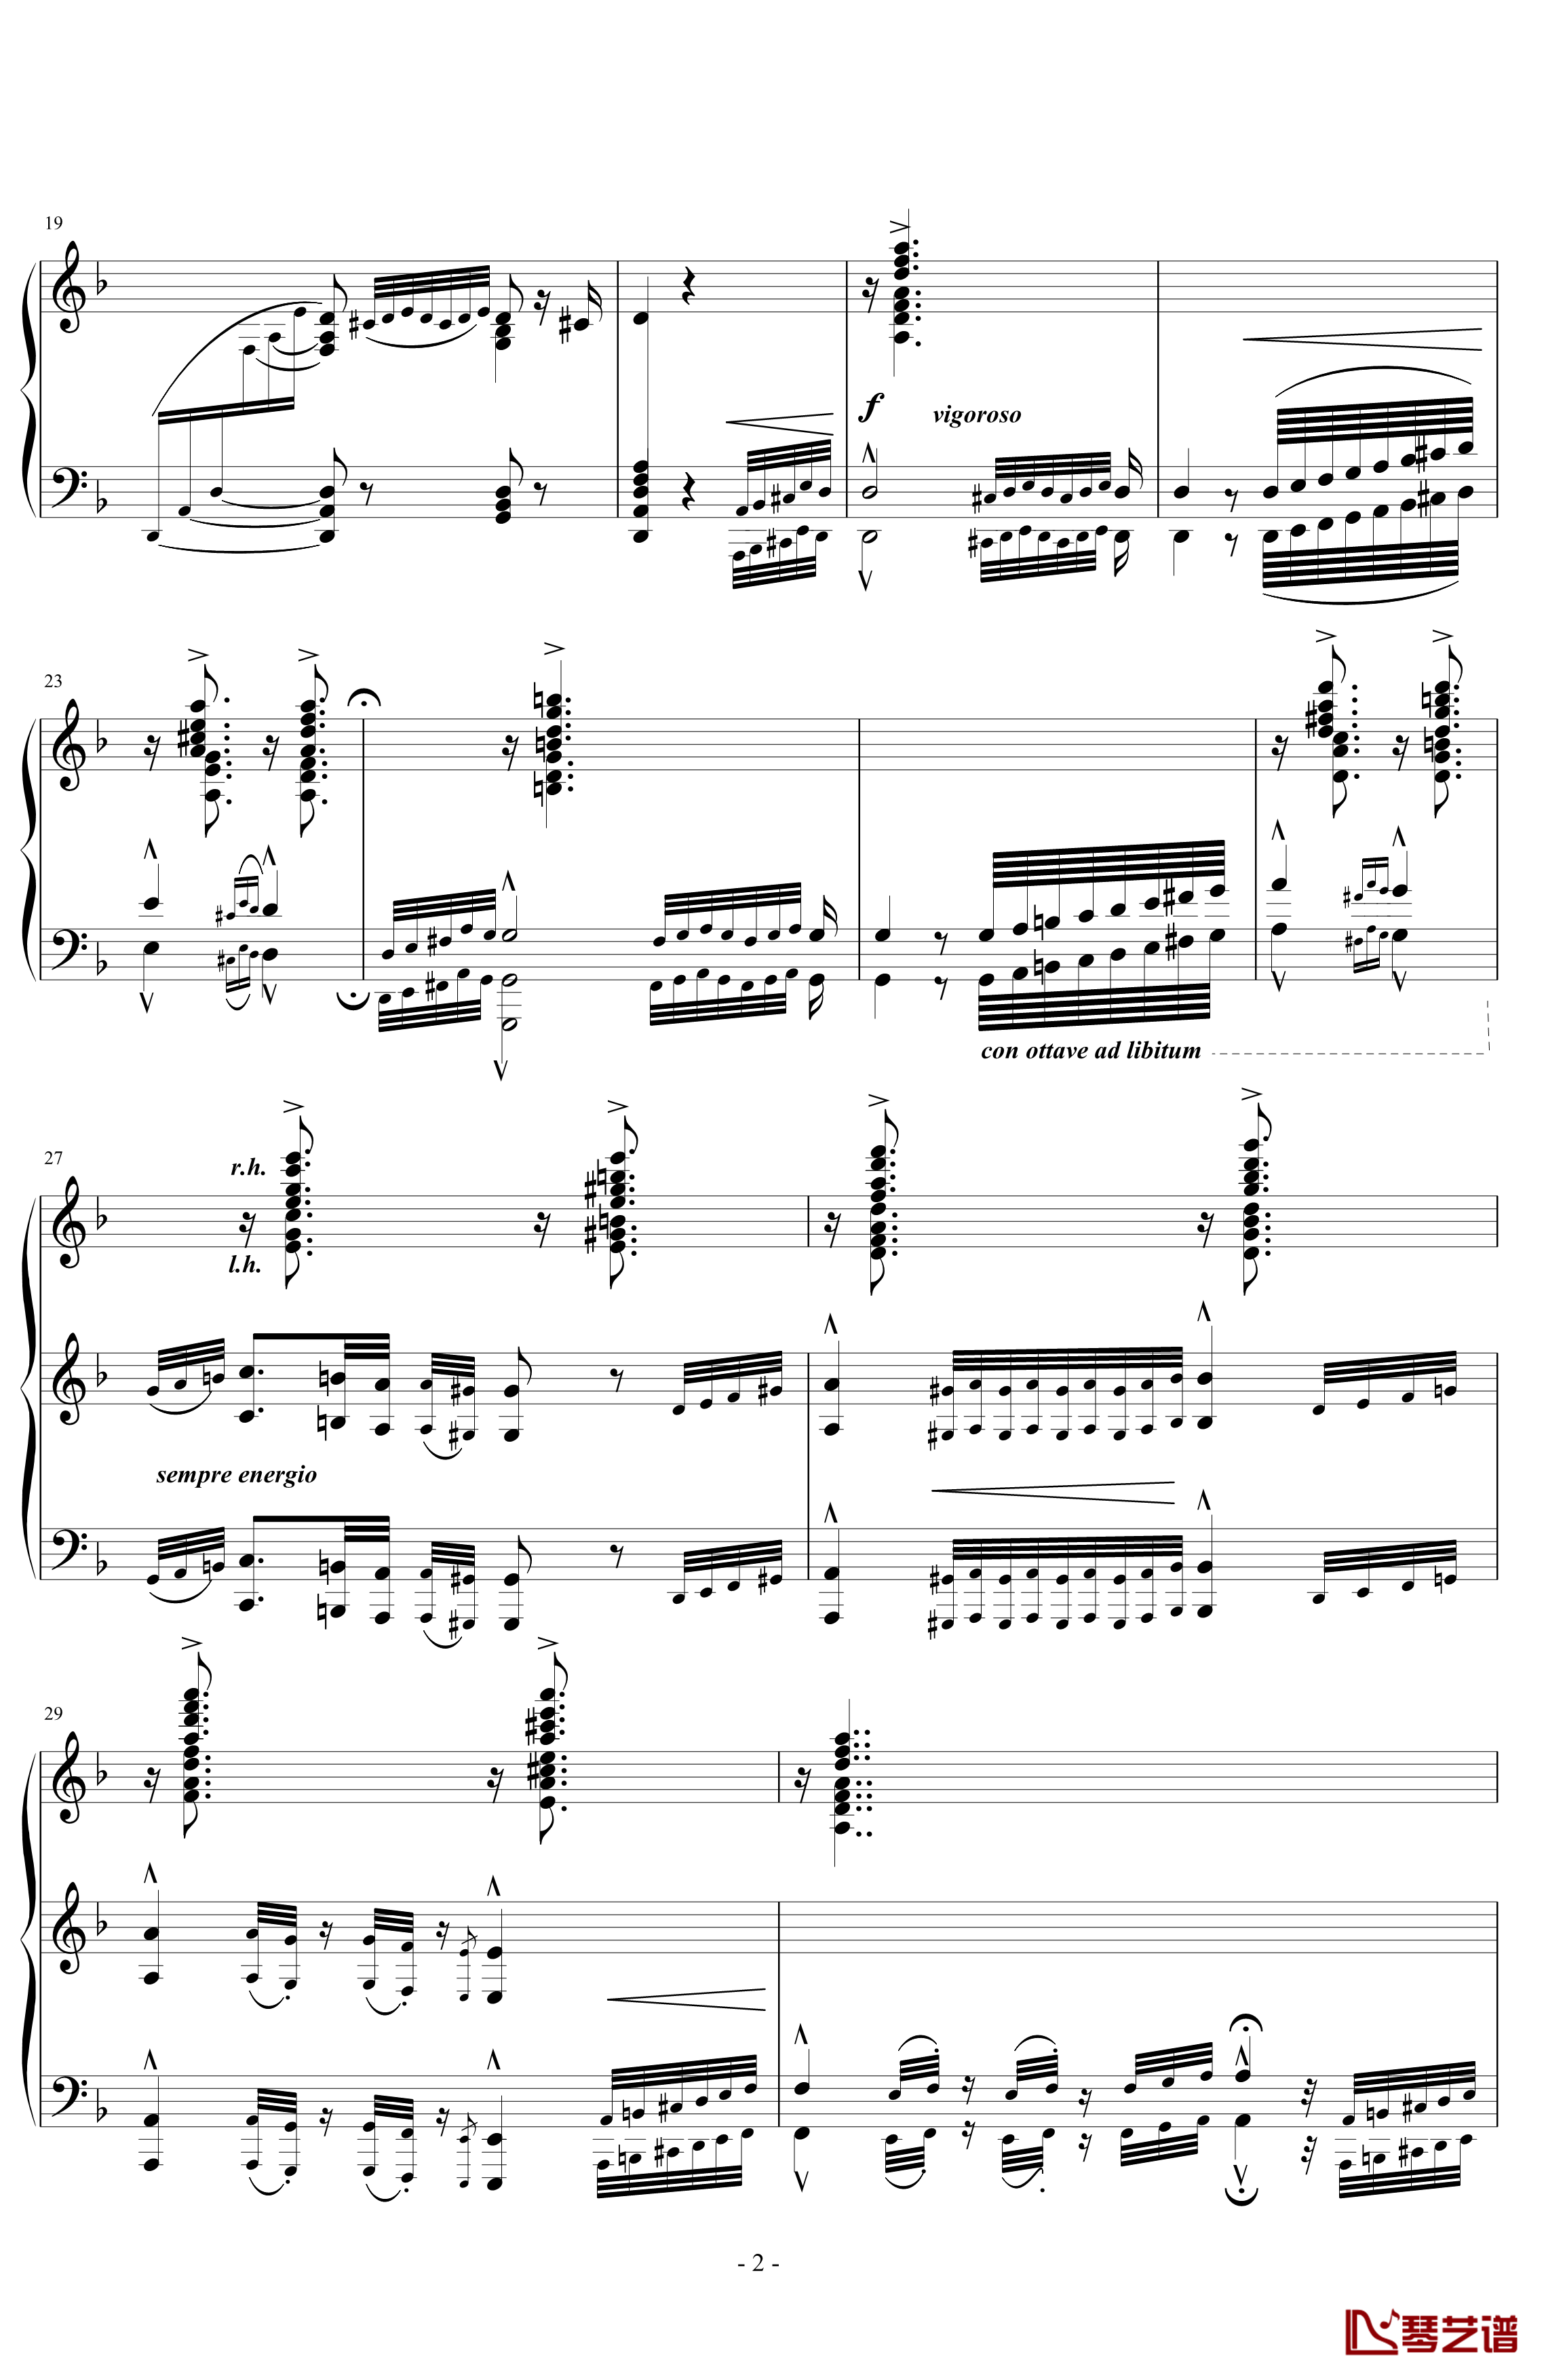 匈牙利狂想曲第7号钢琴谱-一首欢快活泼的舞曲-李斯特2